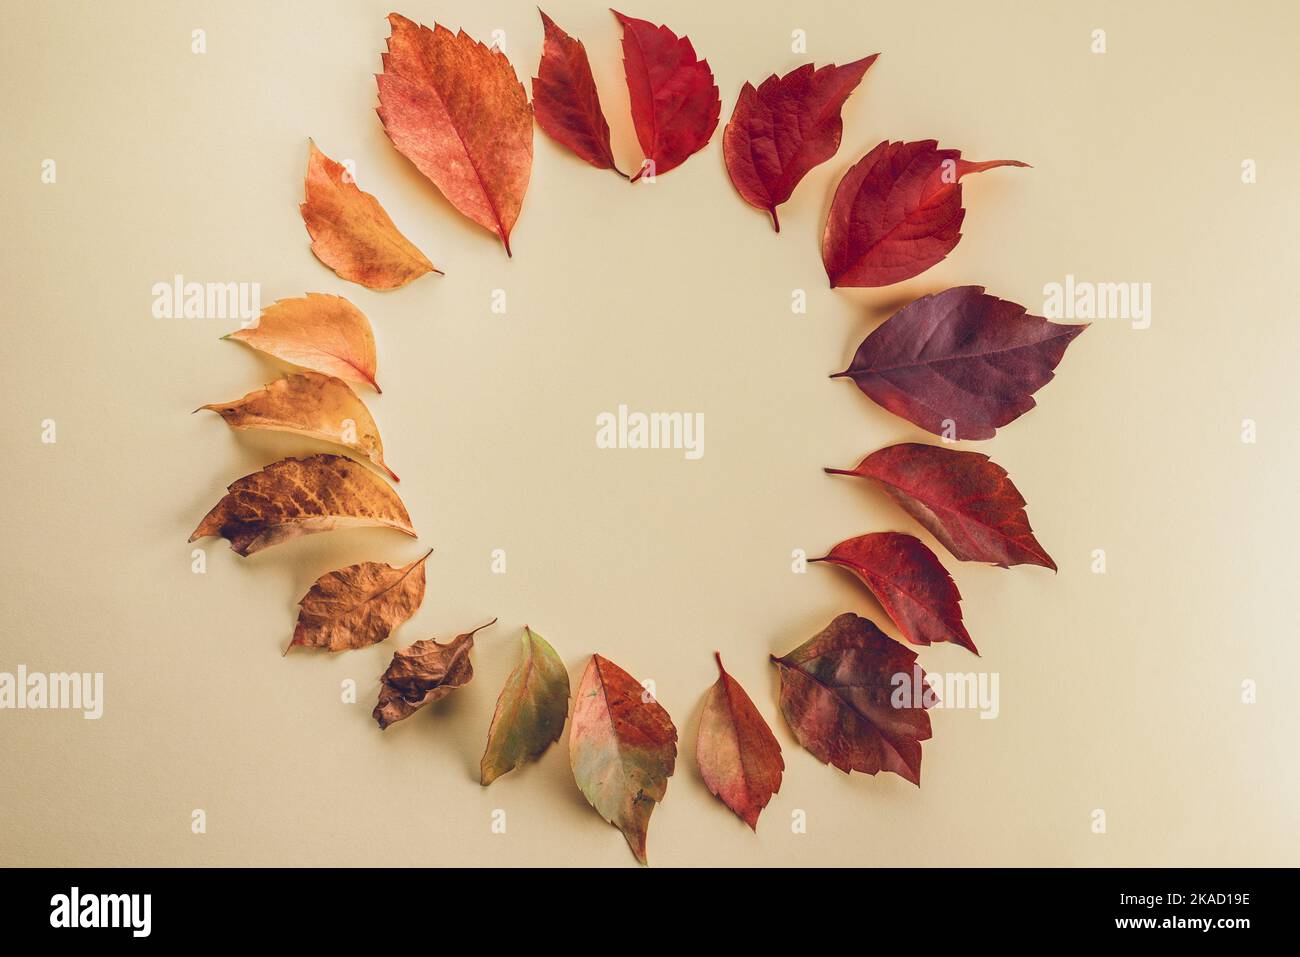 Cadre circulaire avec feuilles de la saison d'automne. Concept d'automne et arrière-plan. Copier l'espace pour le texte Banque D'Images